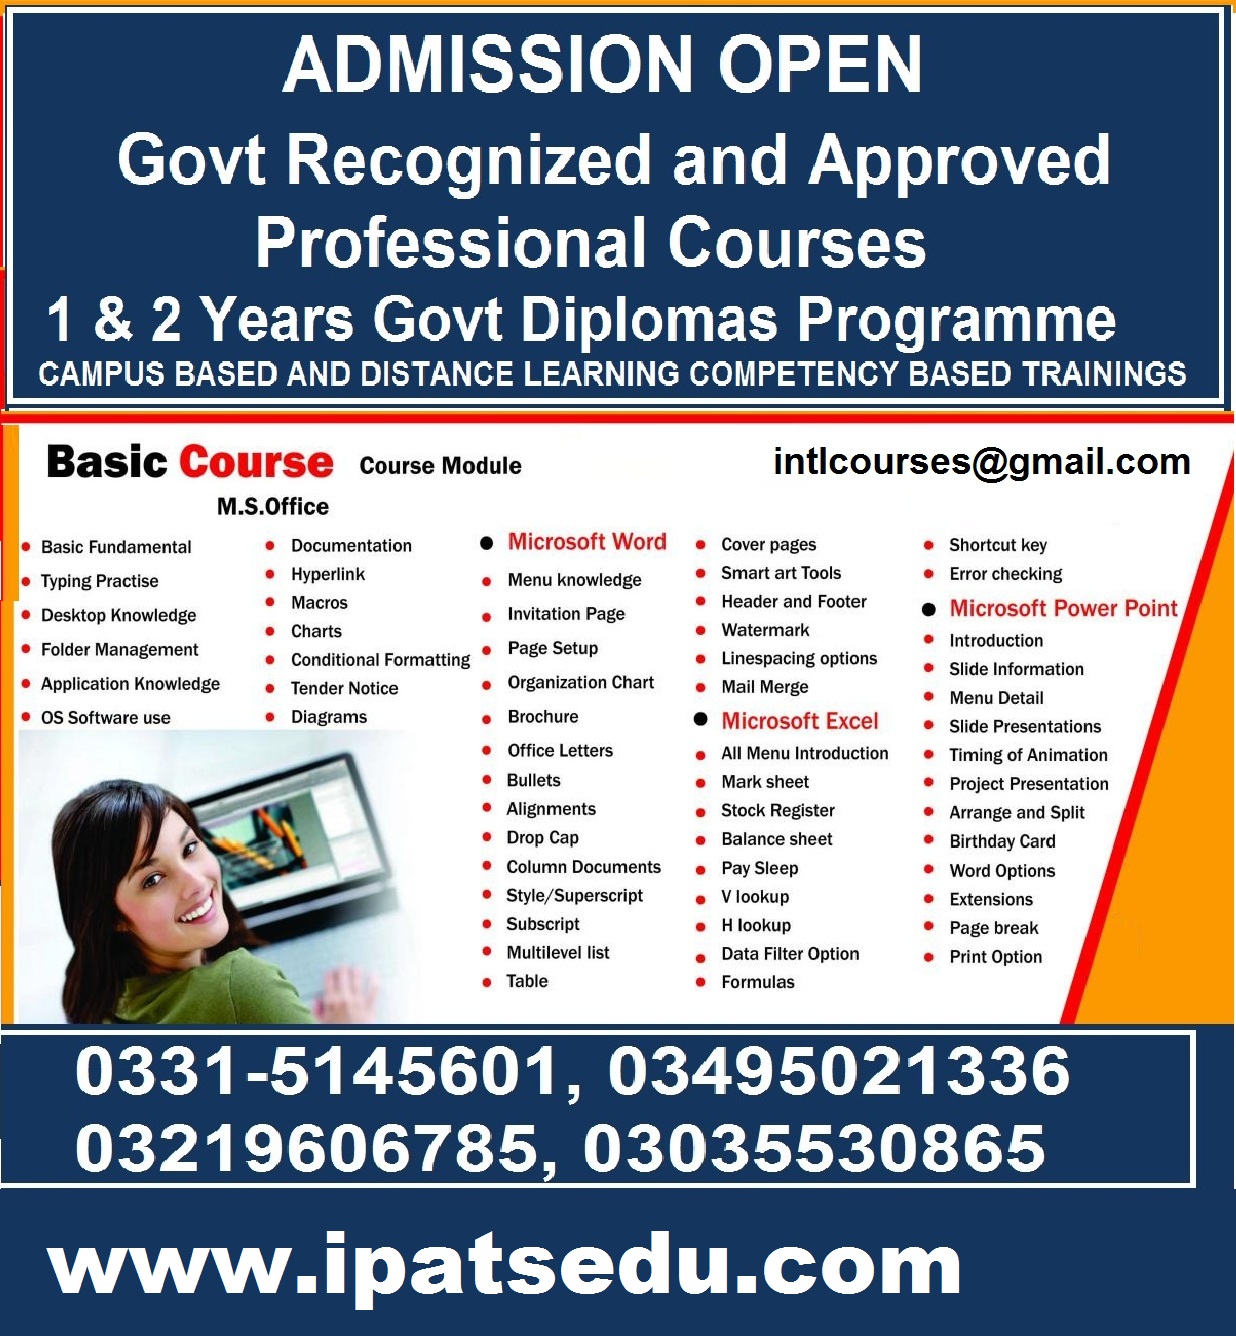 Diploma/Certificate Hasil krain Experience ki Bunyad Pr Gov Approved